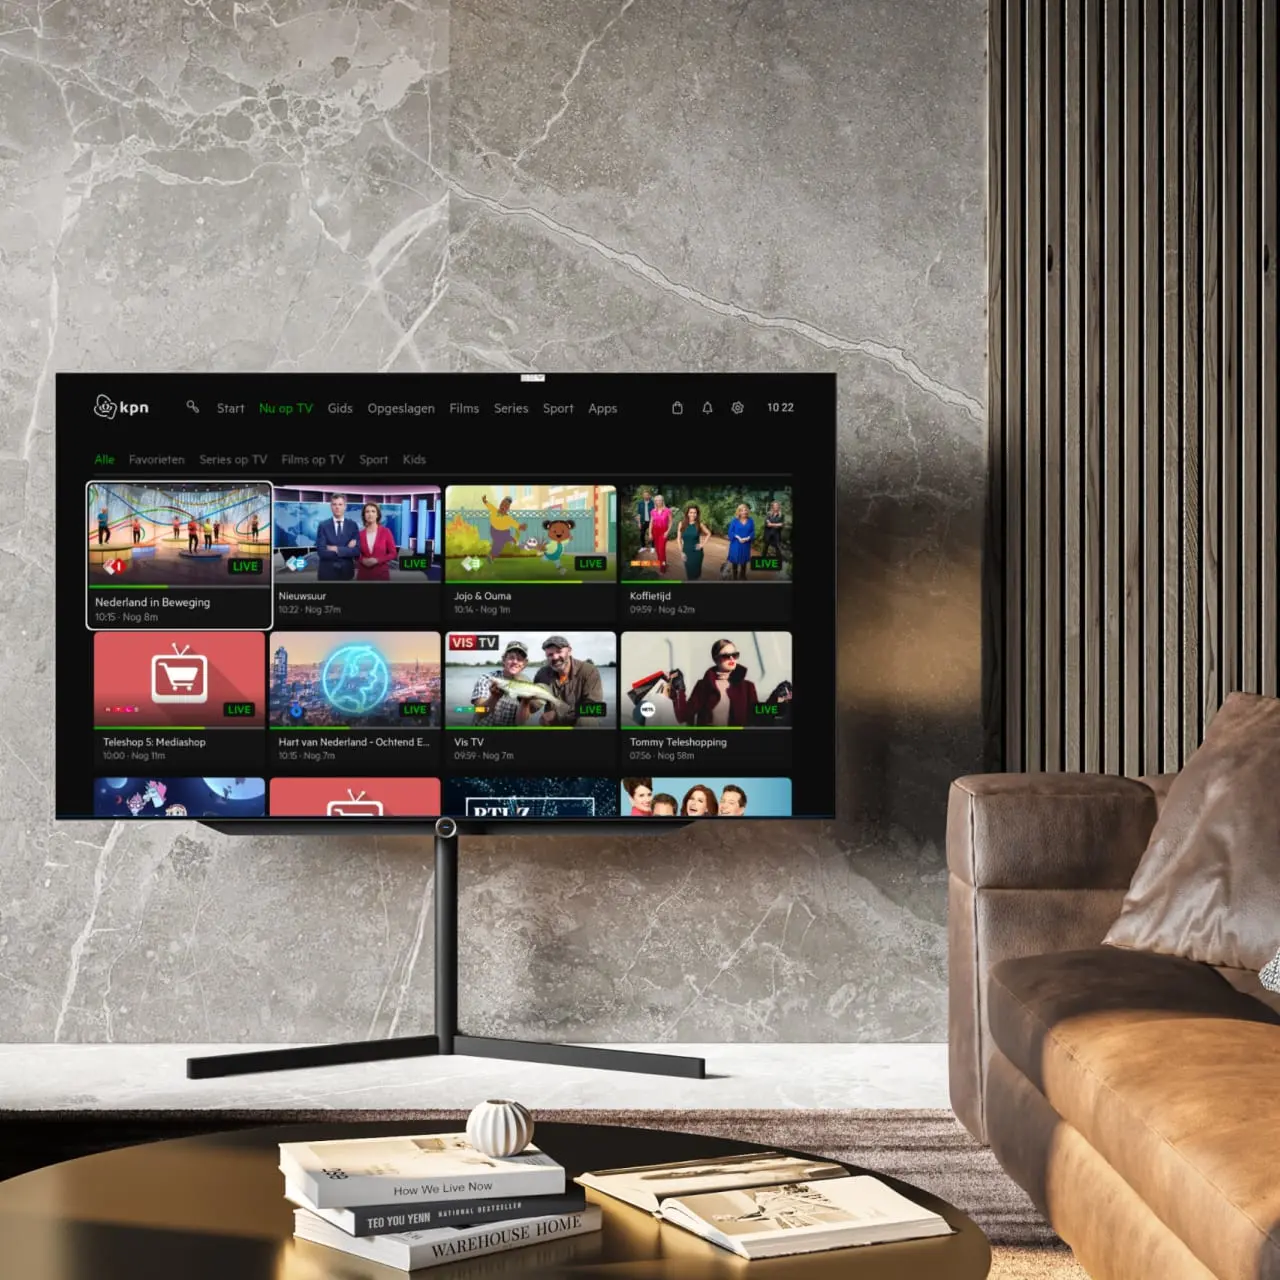 Grote televisie in een kamer toont het kpn zenderoverzicht